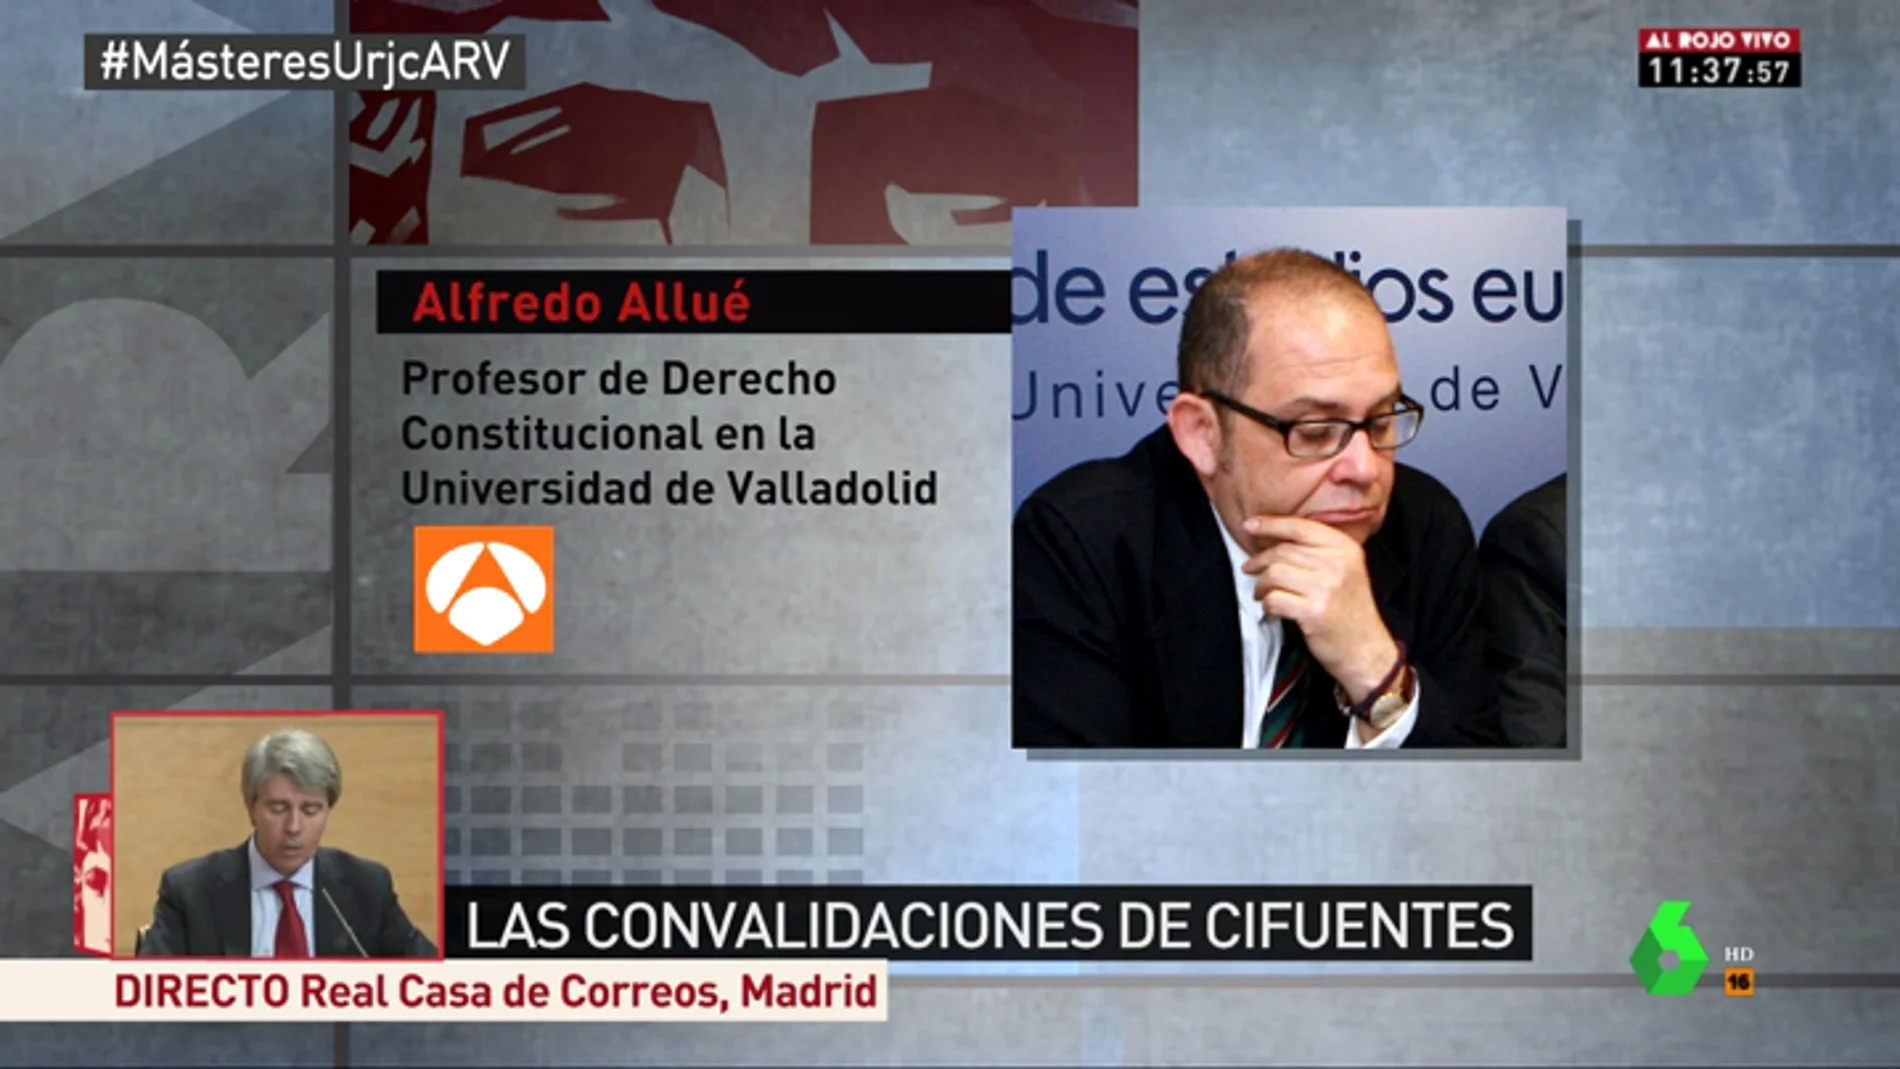 Alfredo Allué, proesor de Derecho Constitucional en Valladolid